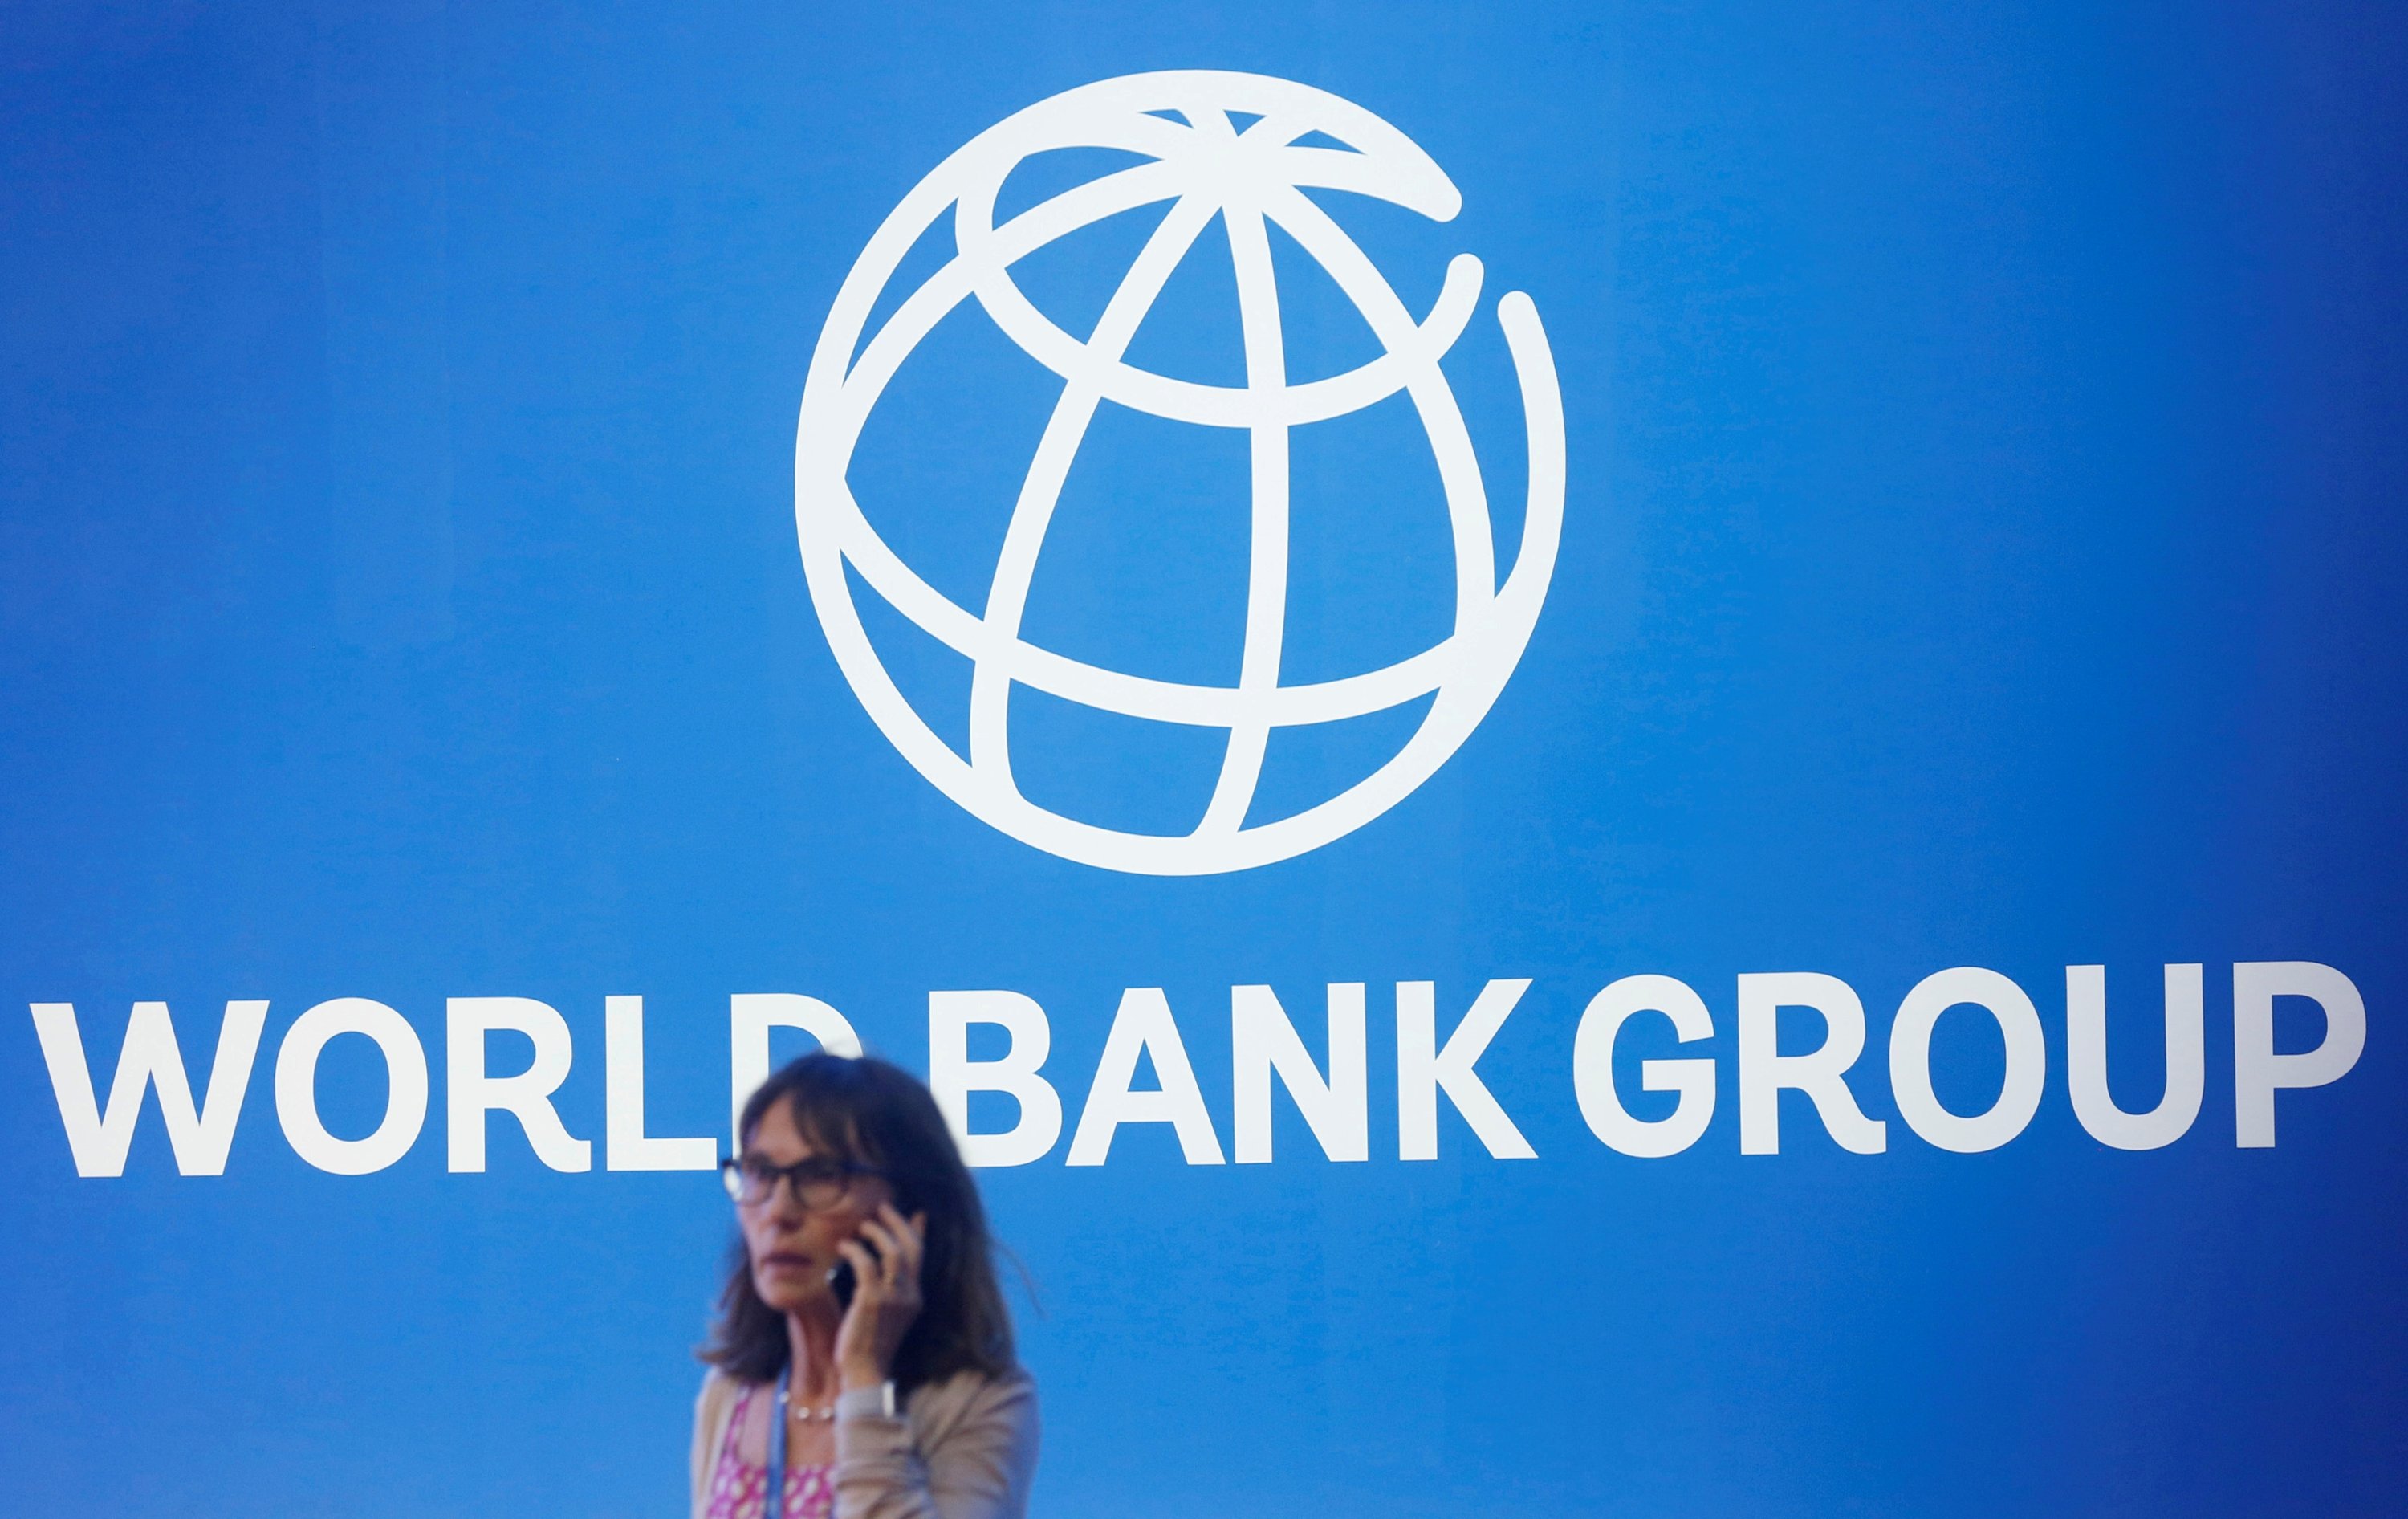 Dünya Bankası, Afganistan'daki ödemeleri askıya aldığını duyurdu